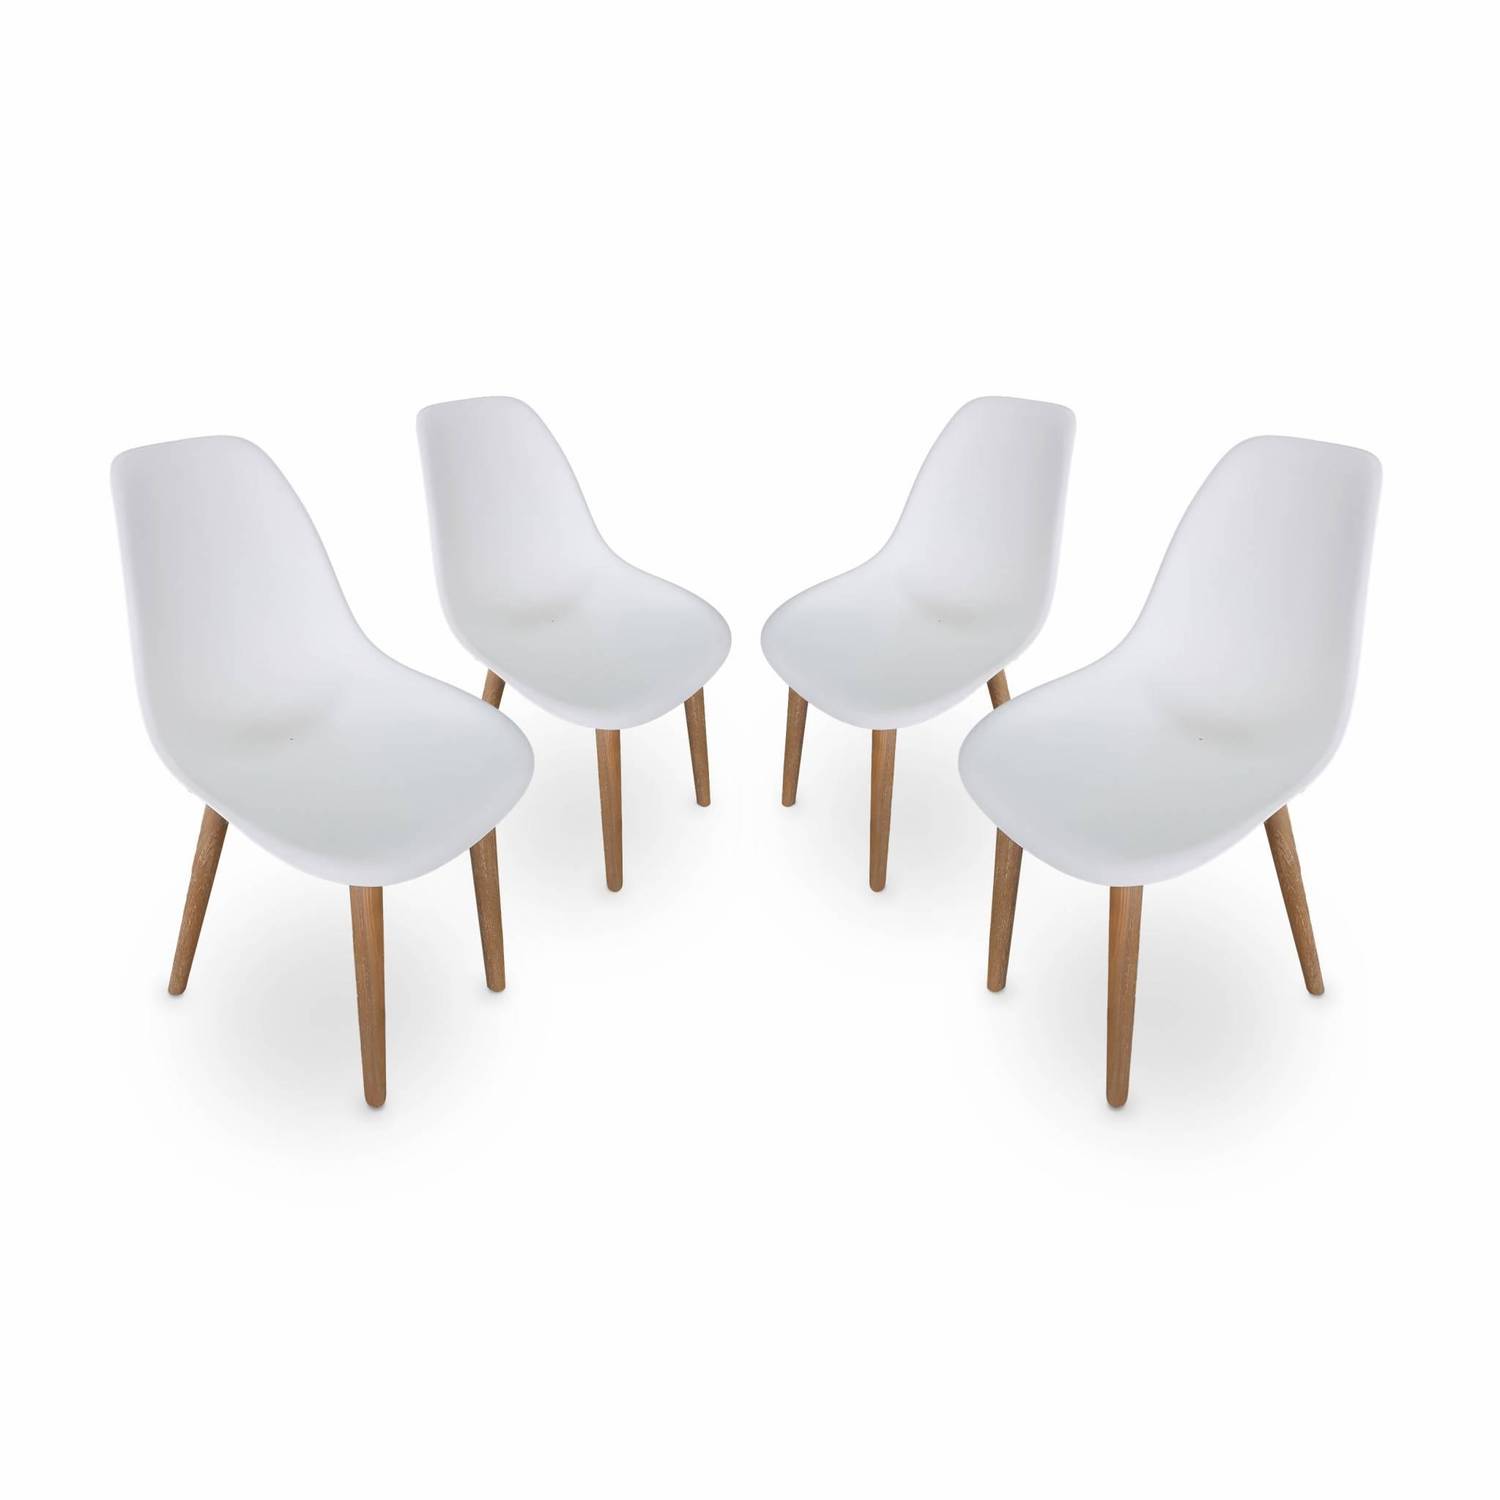 4er Set skandinavische Stühle Penida, aus Akazienholz und weißem Kunstharz gespritzt, innen/außen Photo1